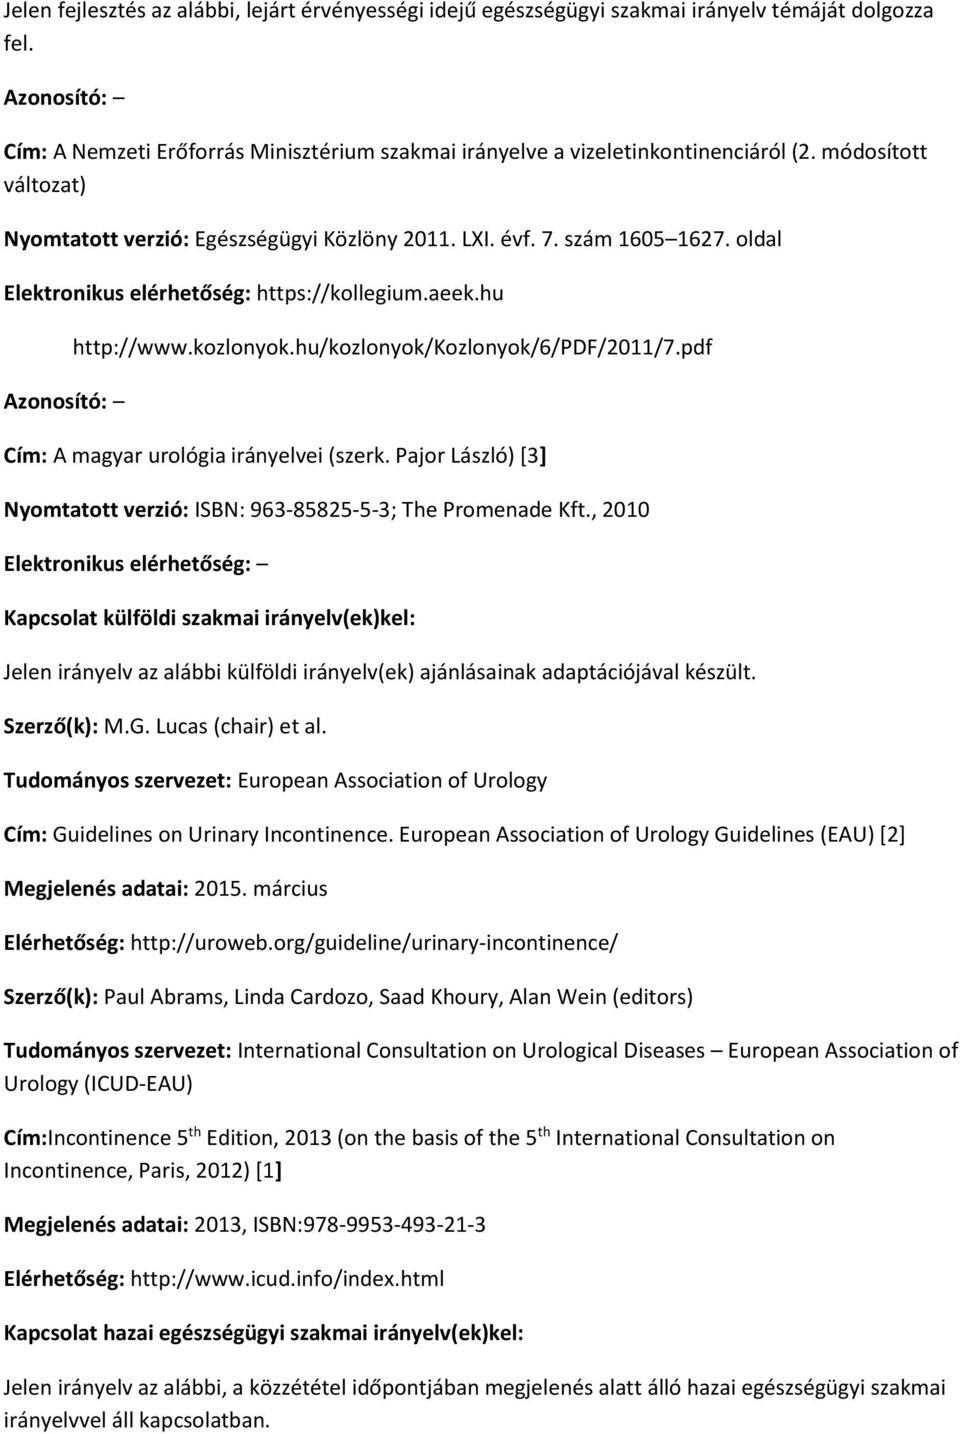 oldal Elektronikus elérhetőség: https://kollegium.aeek.hu Azonosító: http://www.kozlonyok.hu/kozlonyok/kozlonyok/6/pdf/2011/7.pdf Cím: A magyar urológia irányelvei (szerk.